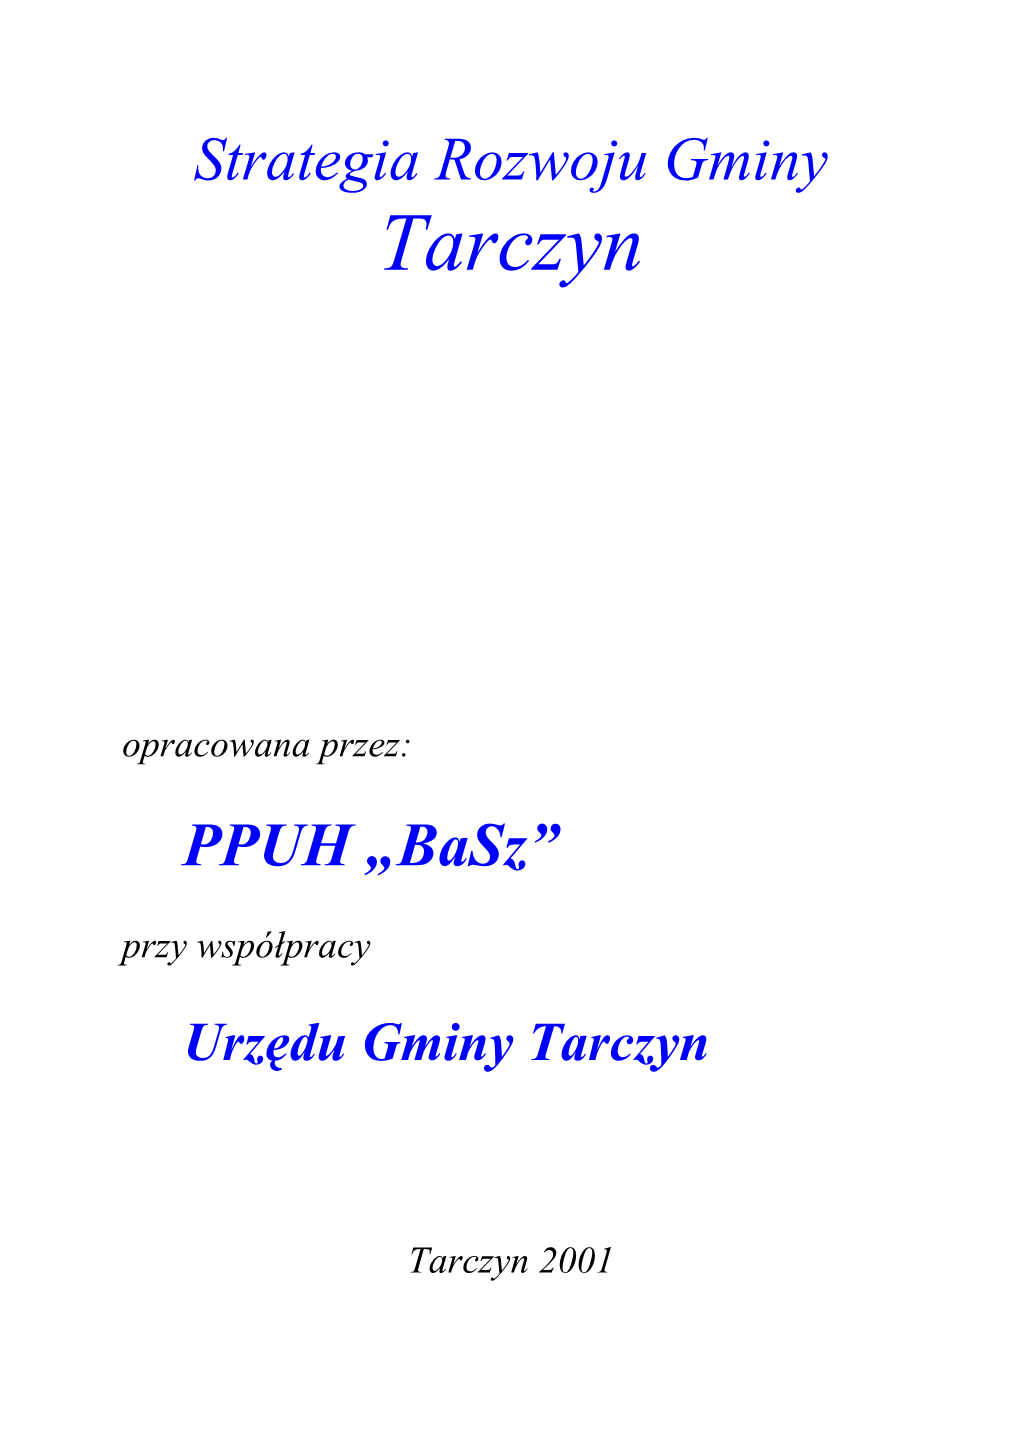 Strategia Rozwoju Gminy Tarczyn